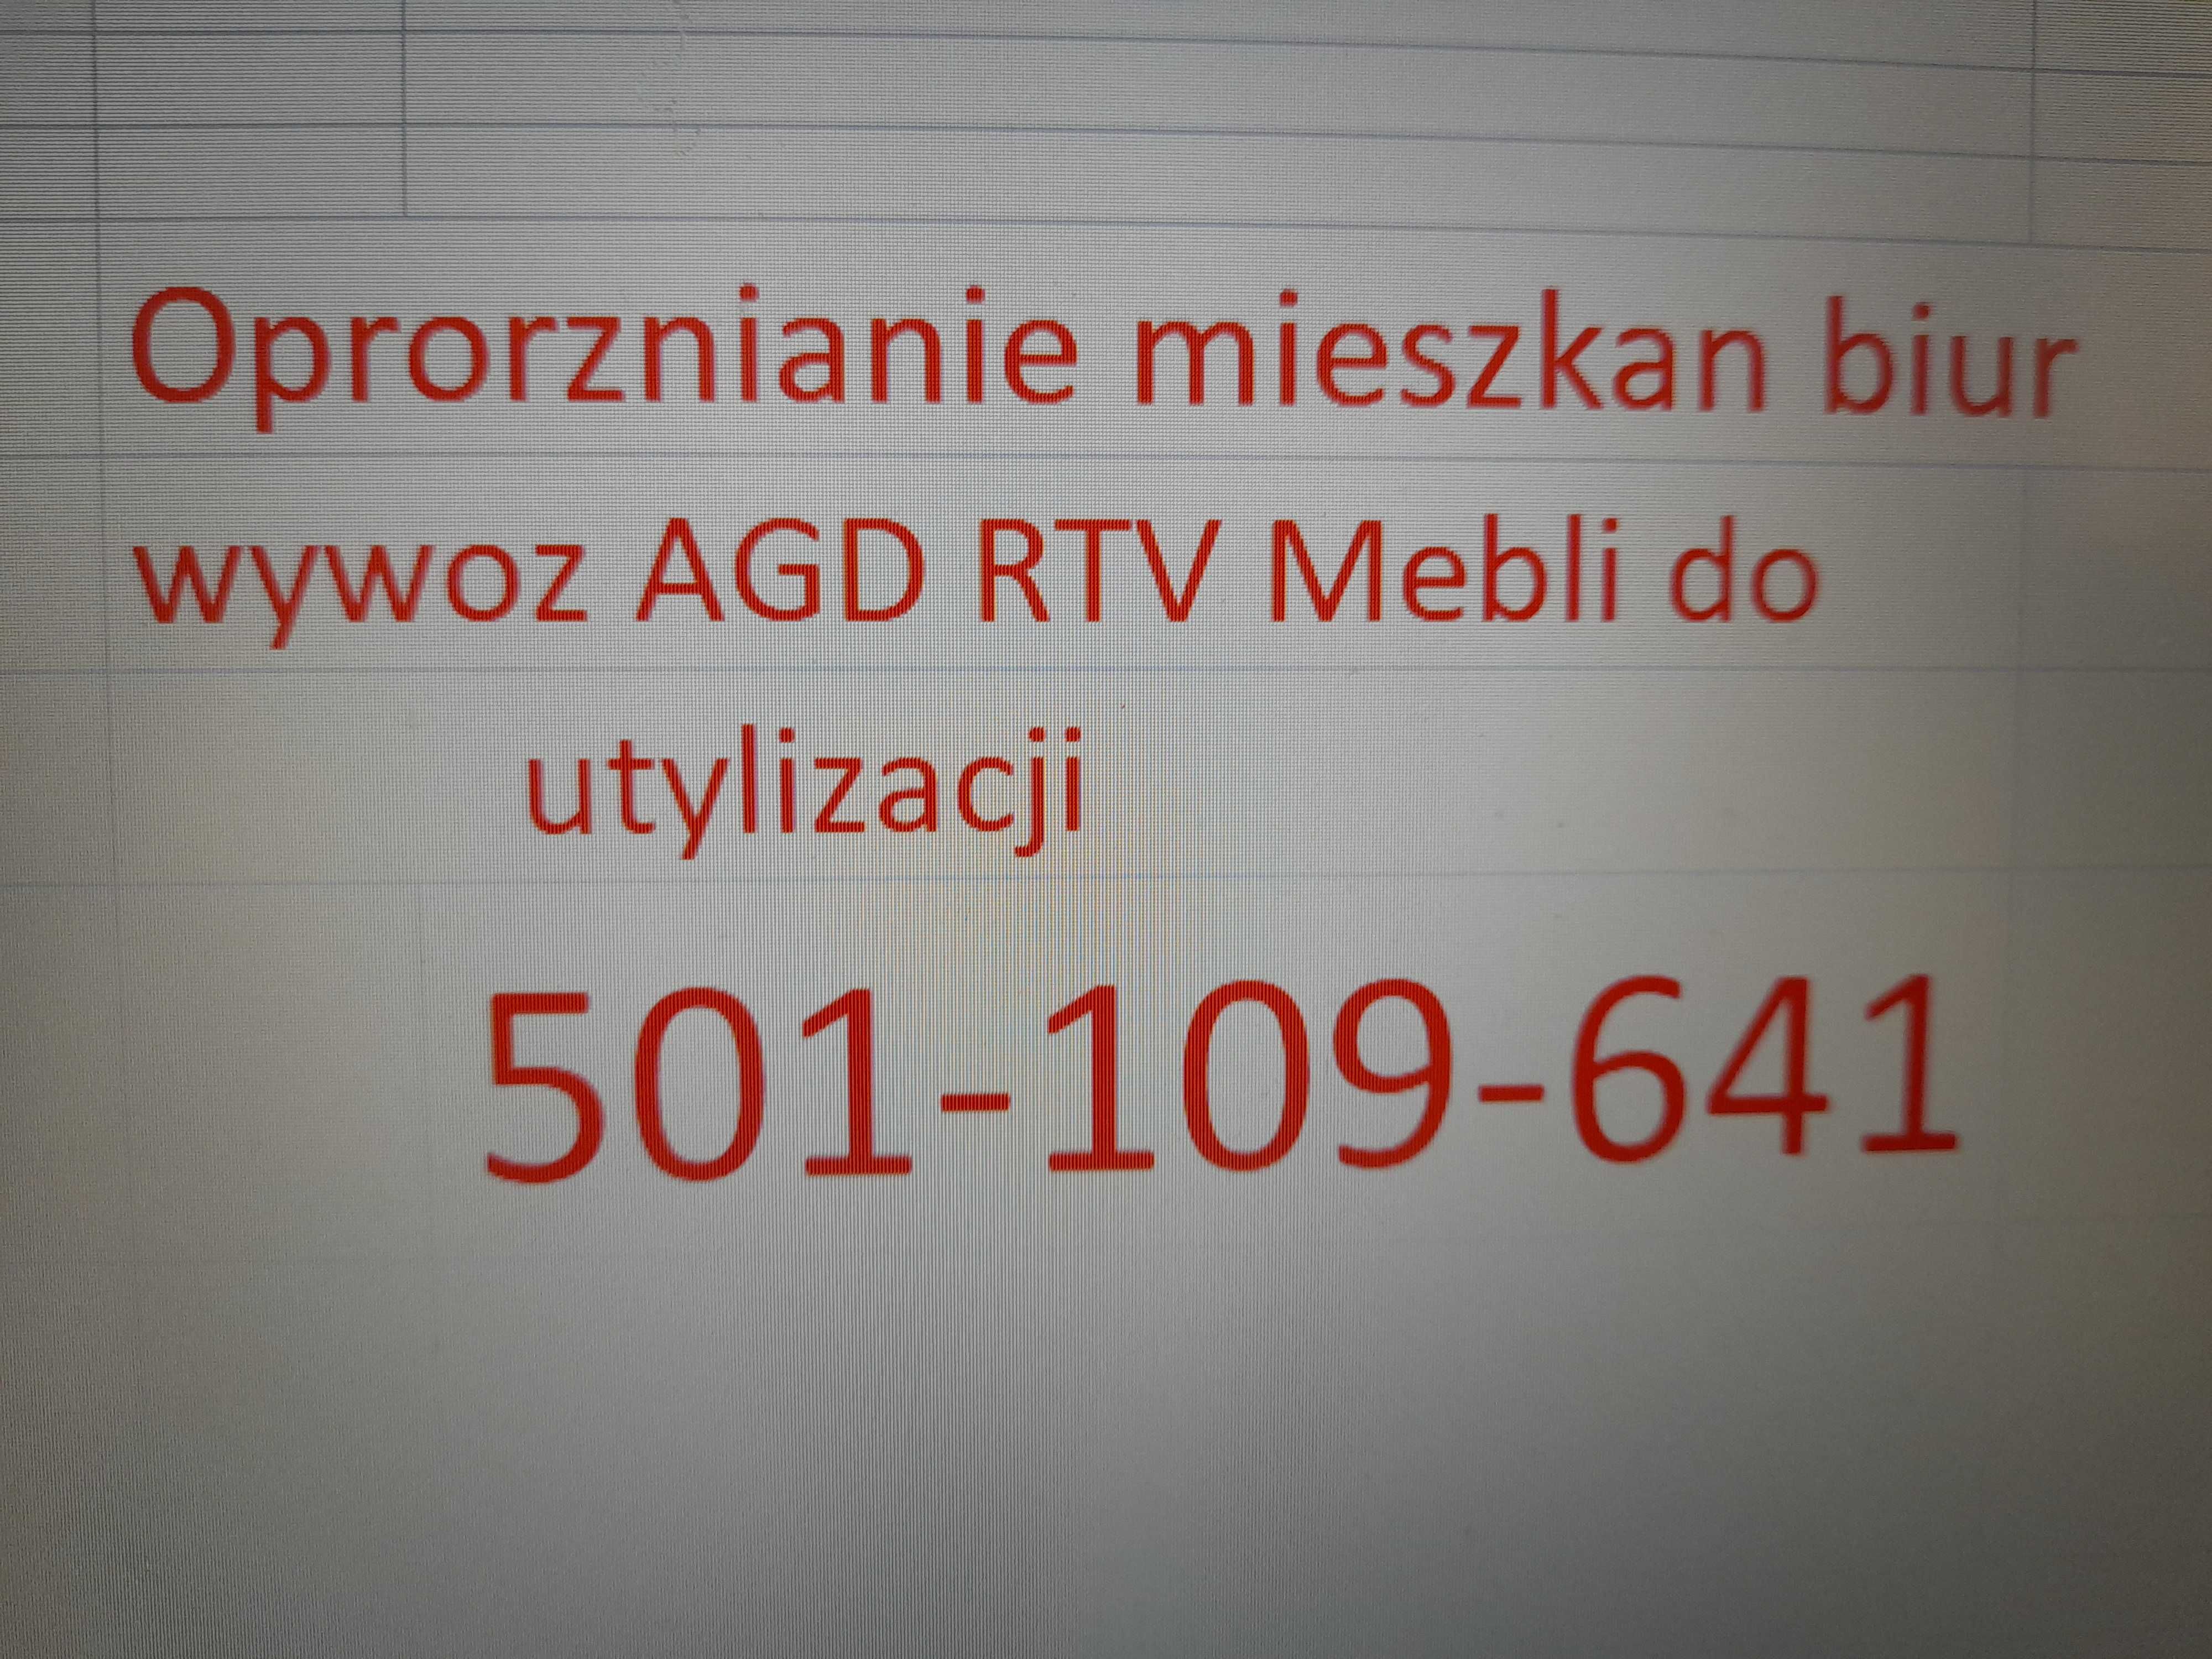 Oproznianie mieszkan biur Wywoz AGD RTV Mebli do utylizacji Bytom